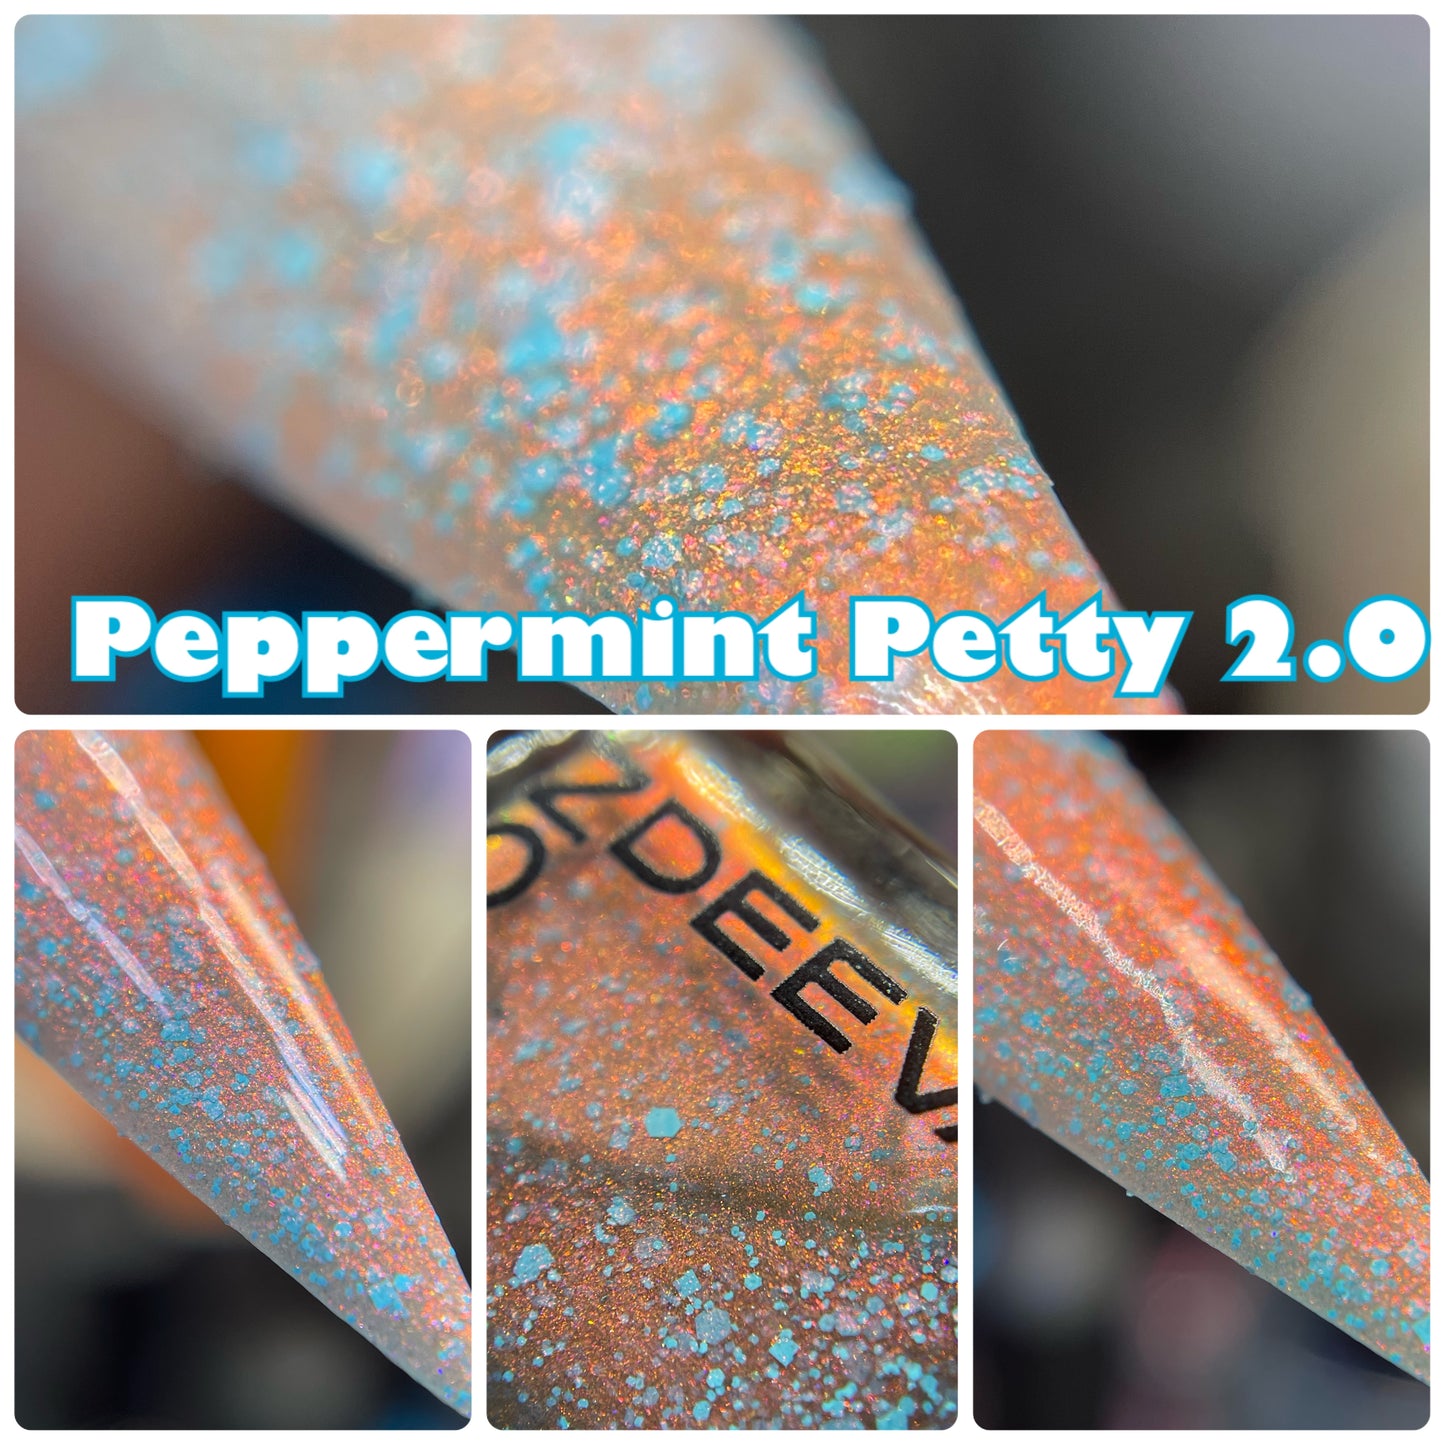 Peppermint Petty 2.0